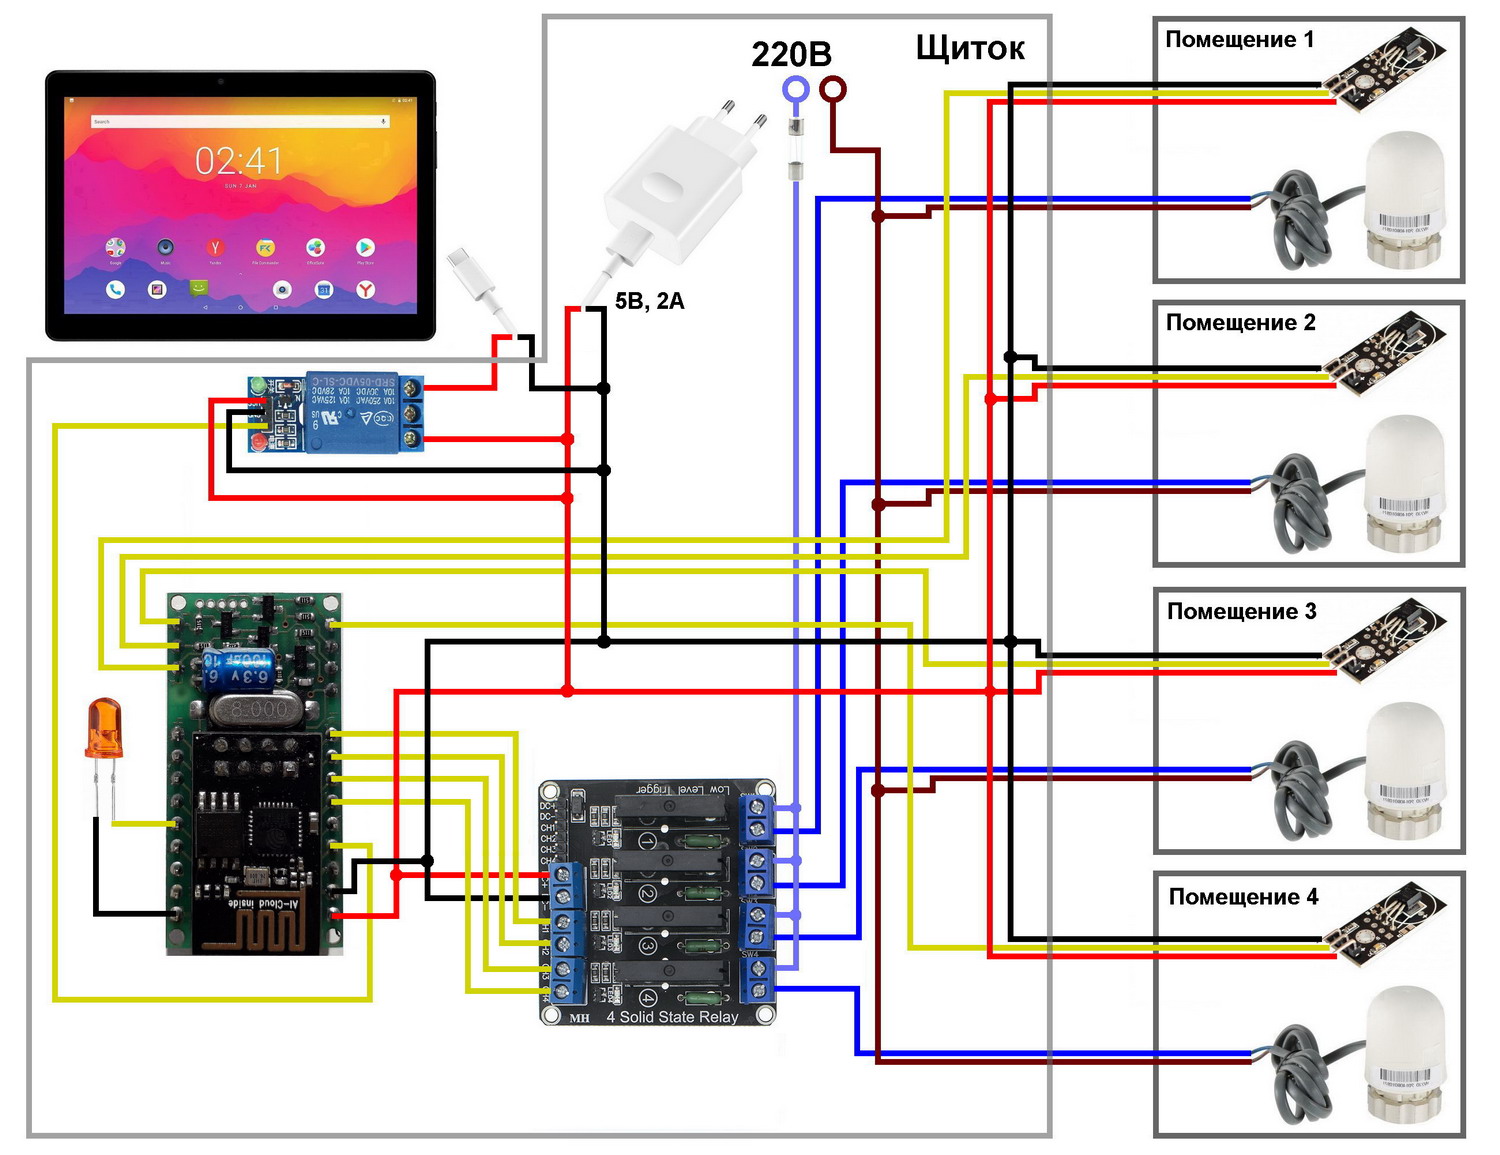 Smacont. Схема подключения датчиков температуры DS18B20, твердотельных реле и сервоприводов отопления к WiFi-модулю SC120